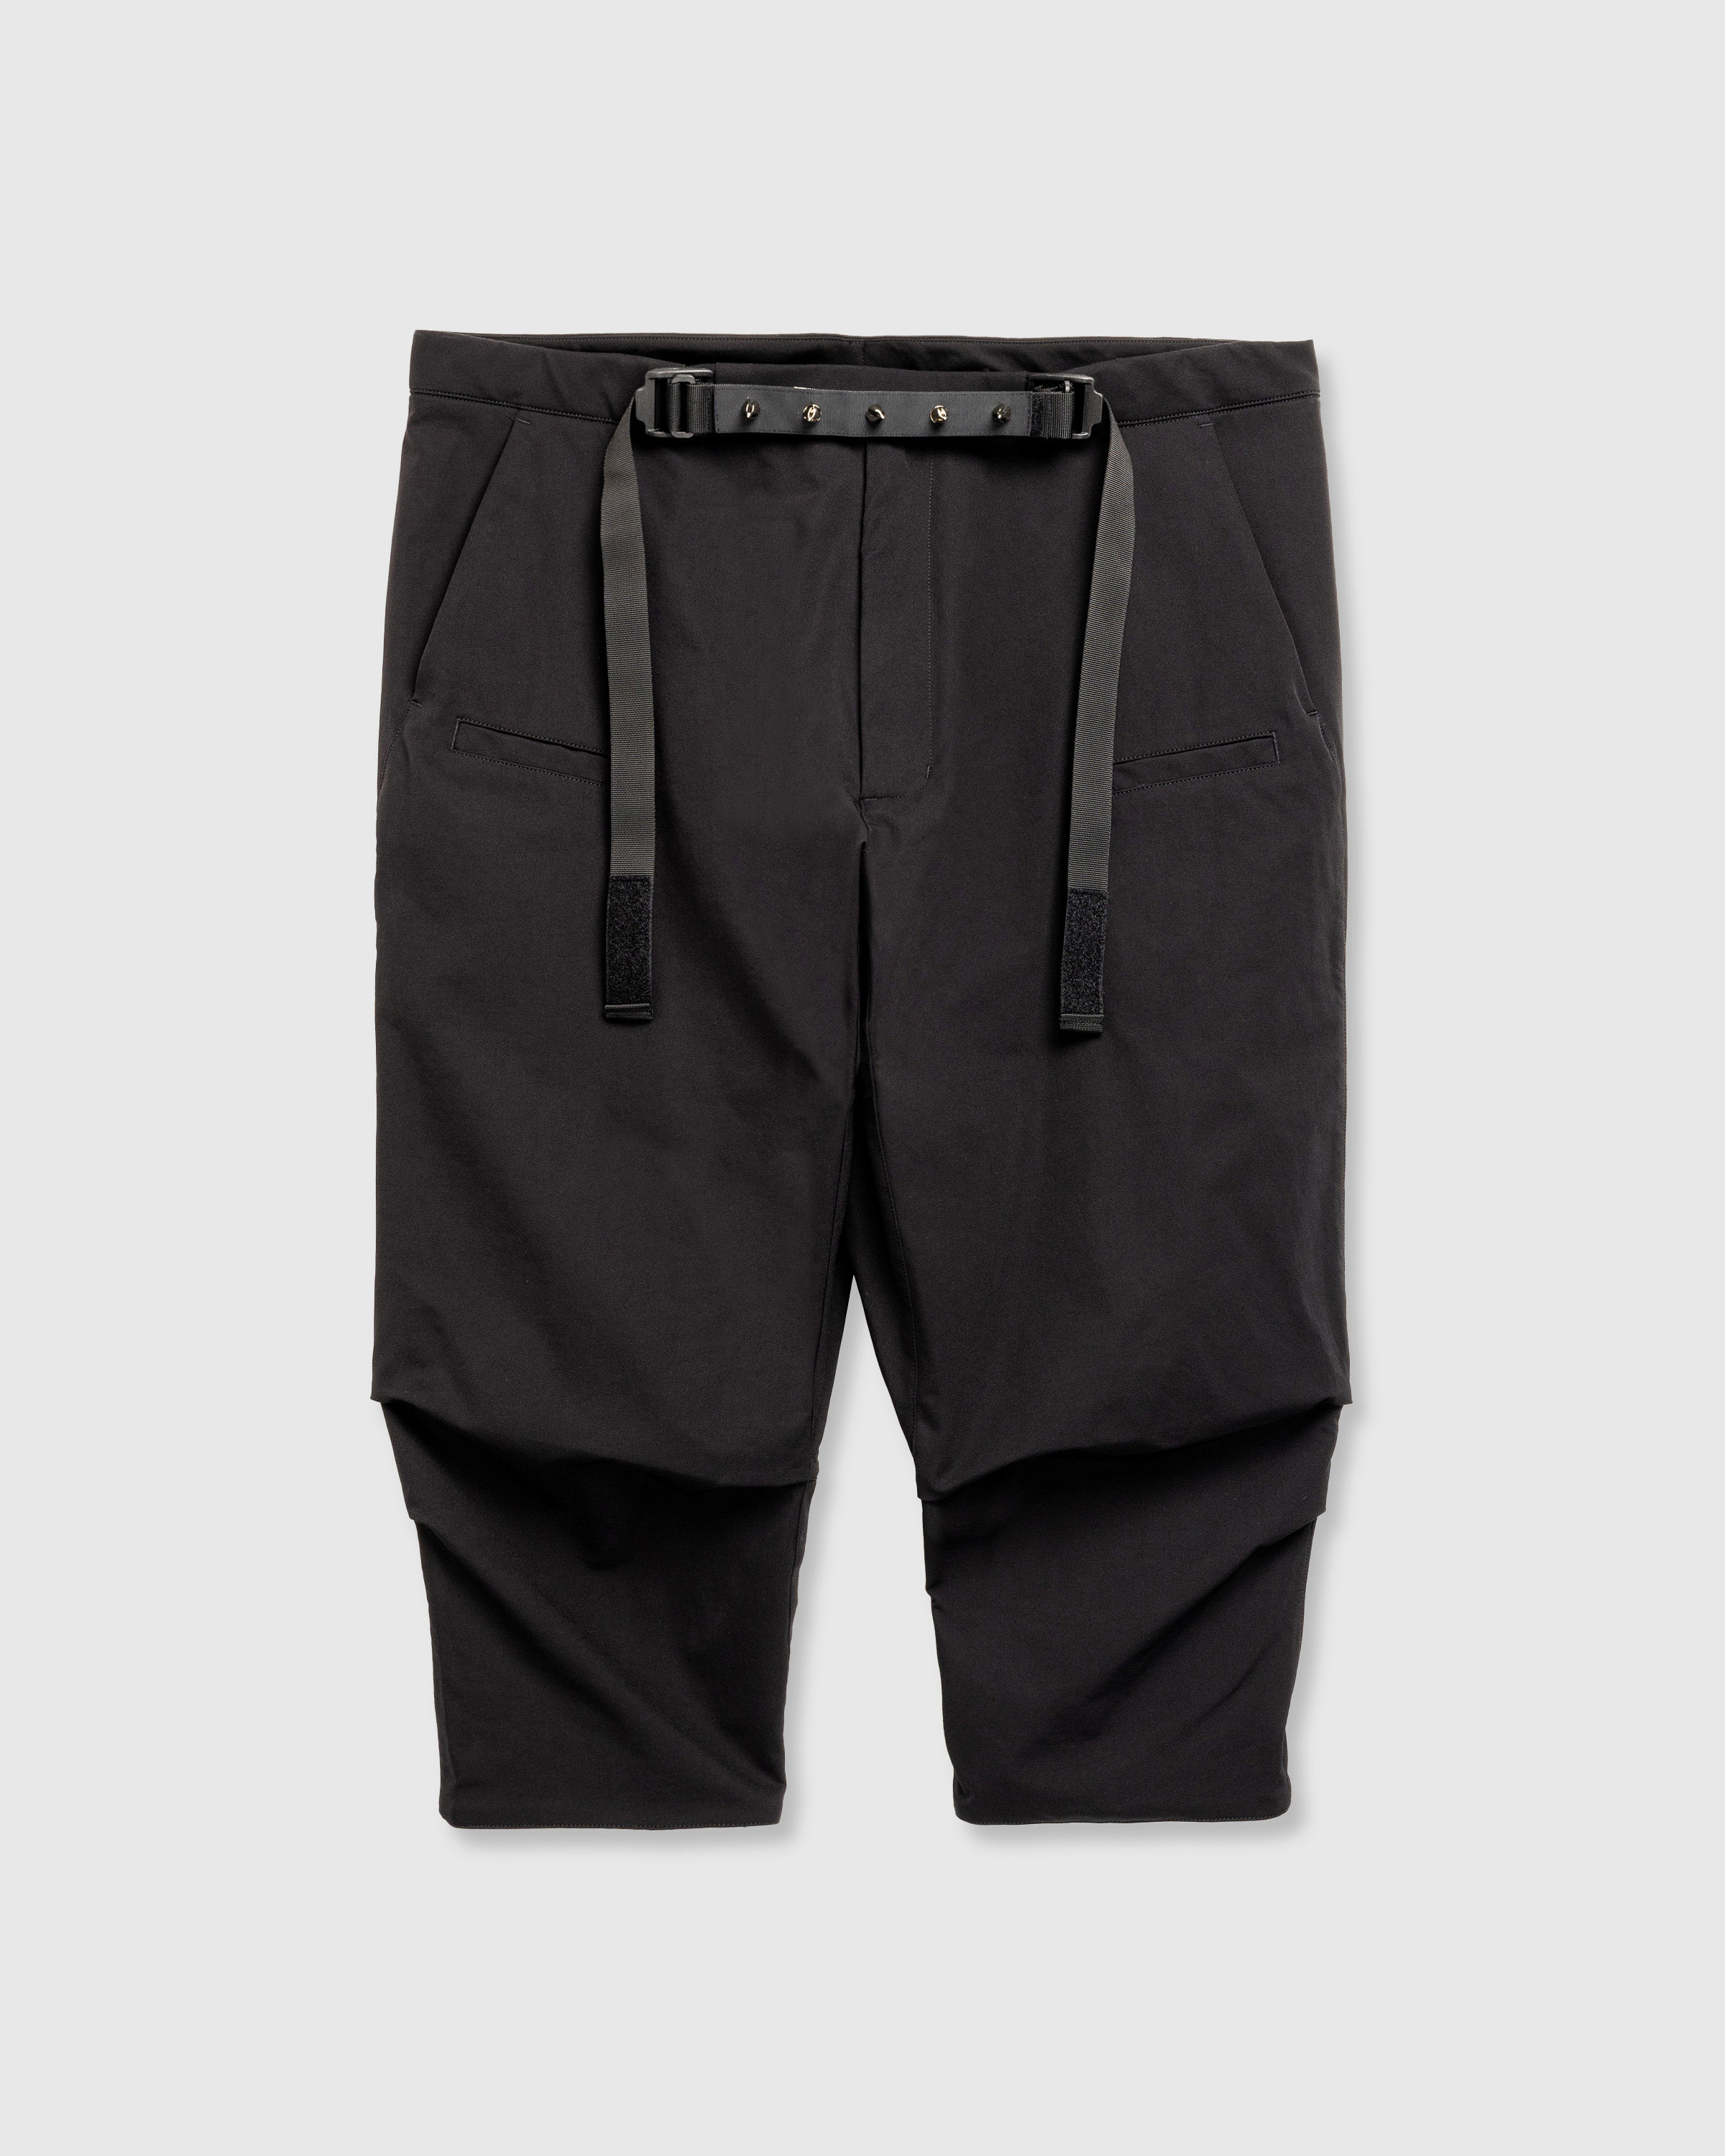 ACRONYM – P17-DS Pant Black - Cargo Pants - Black - Image 1